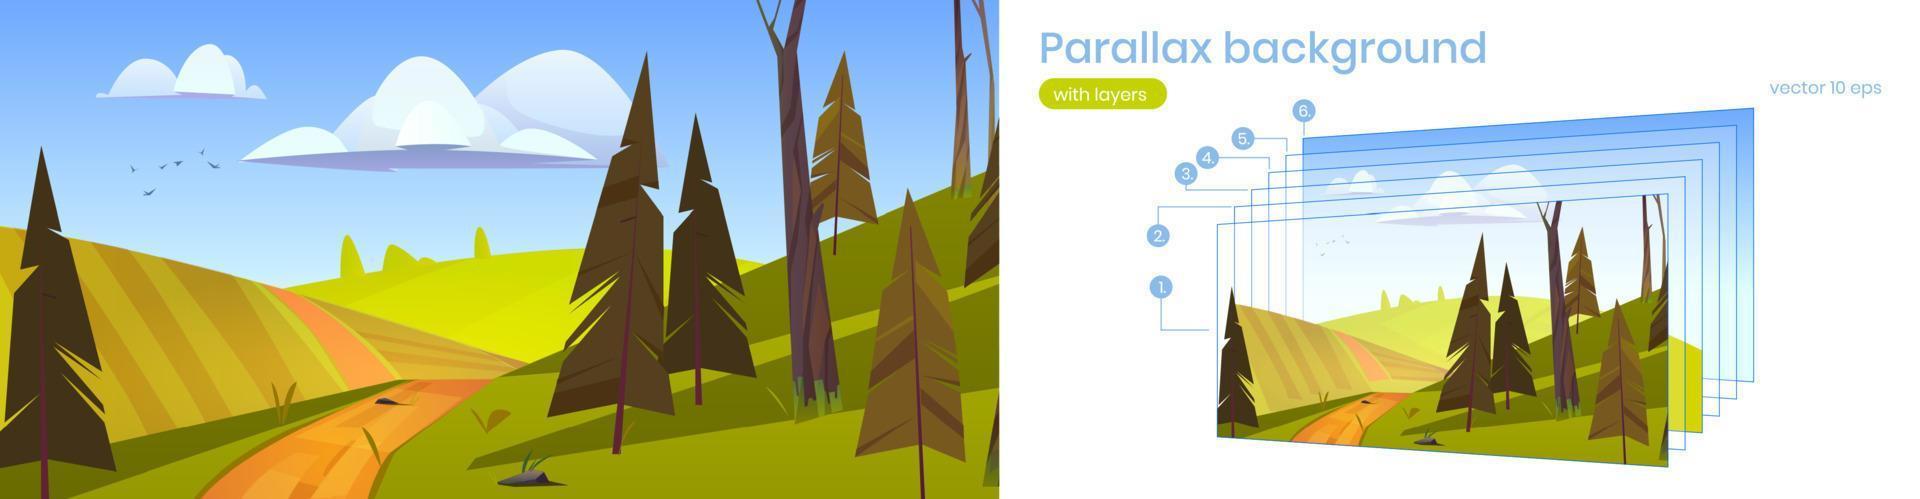 parallax bakgrund tecknad serie natur lantlig landskap vektor